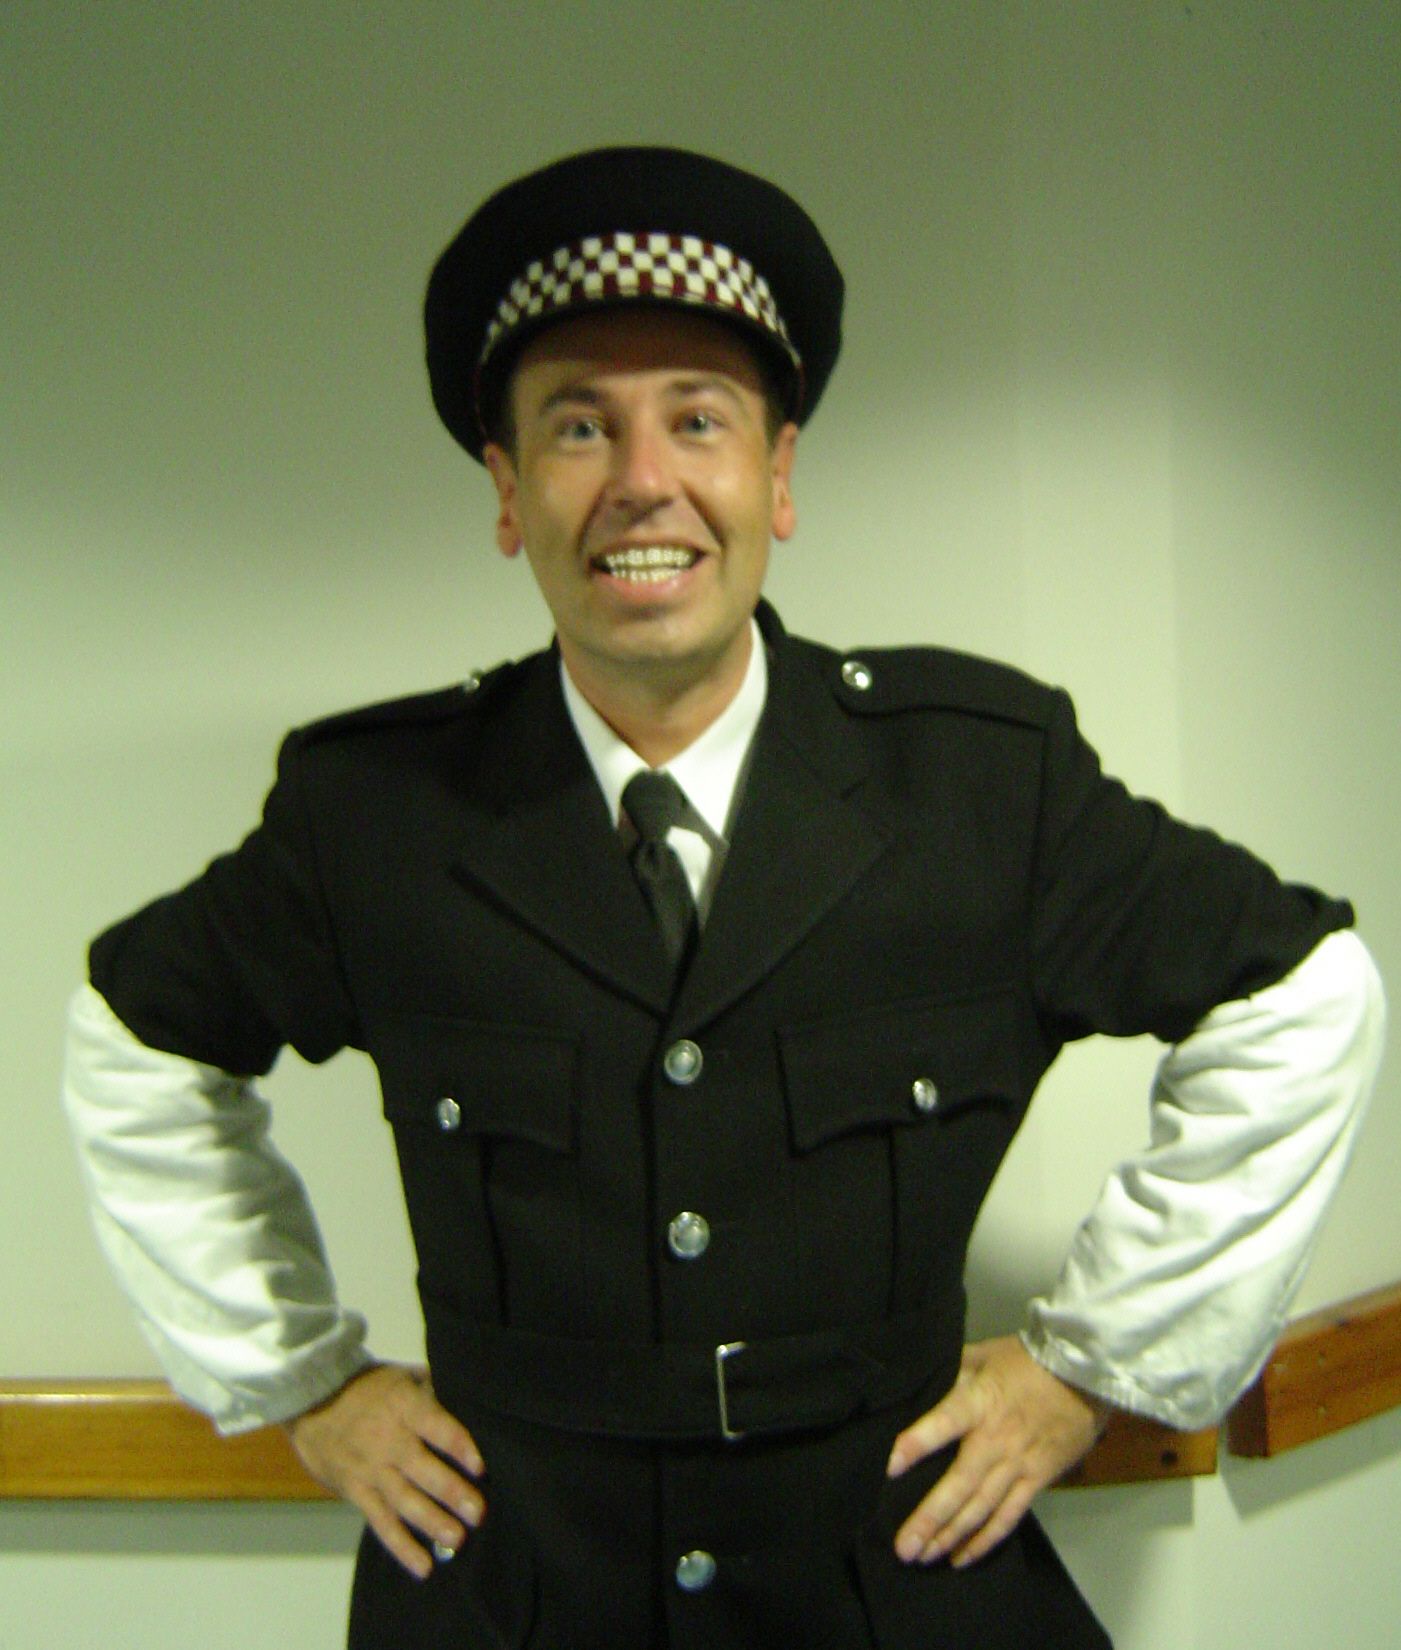 Mark Powlett as the traffic policeman in Brum